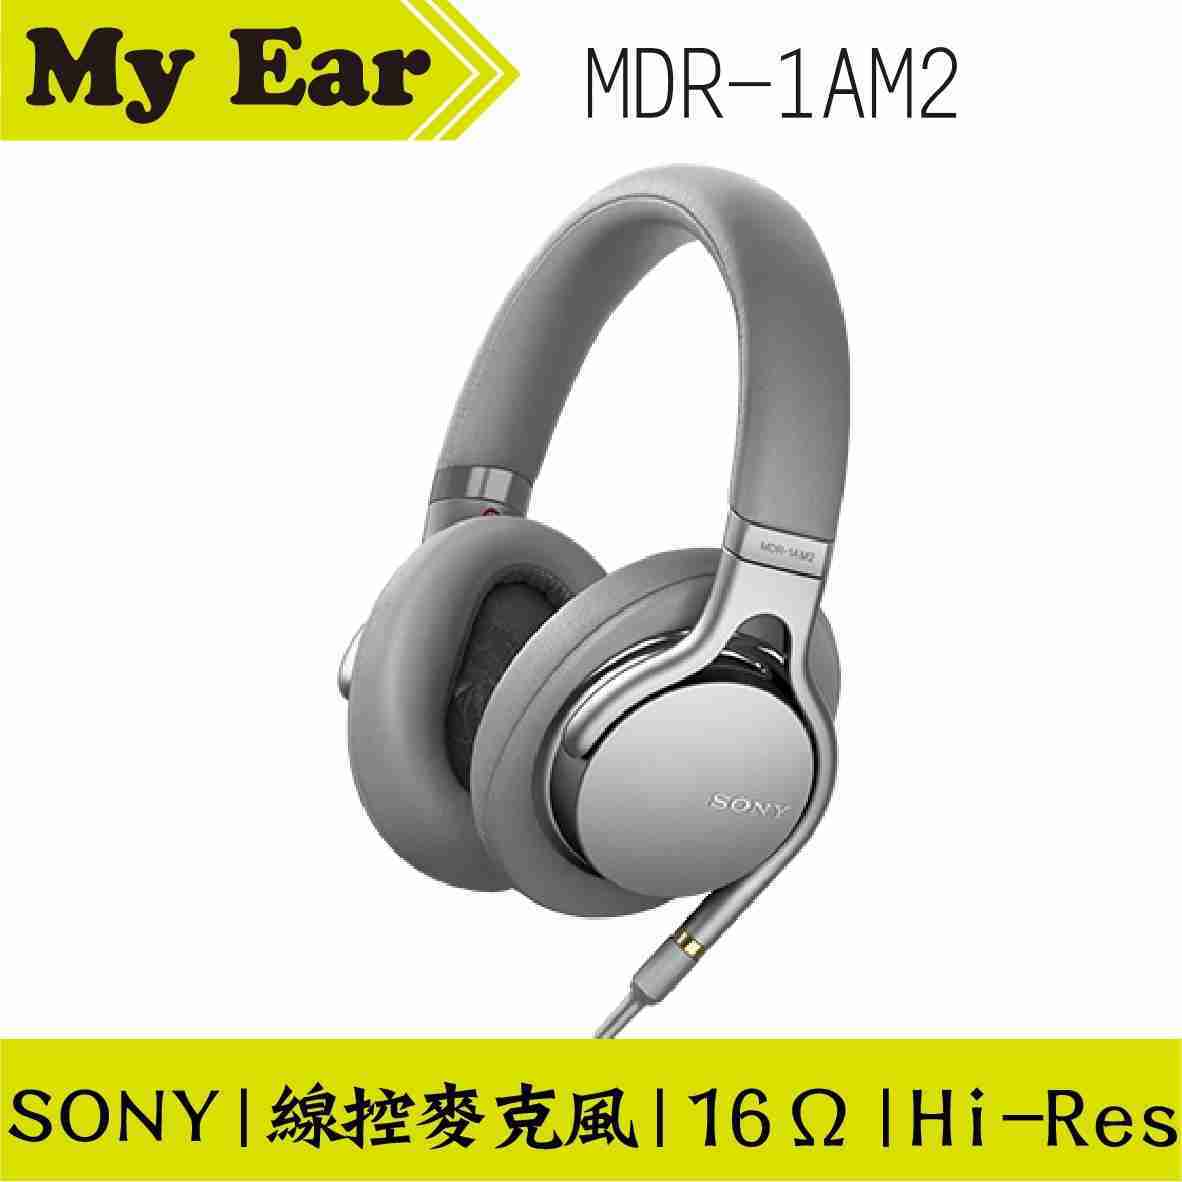 SONY MDR-1AM2 耳罩式 耳機 銀色 高音質 | My Ear耳機專門店